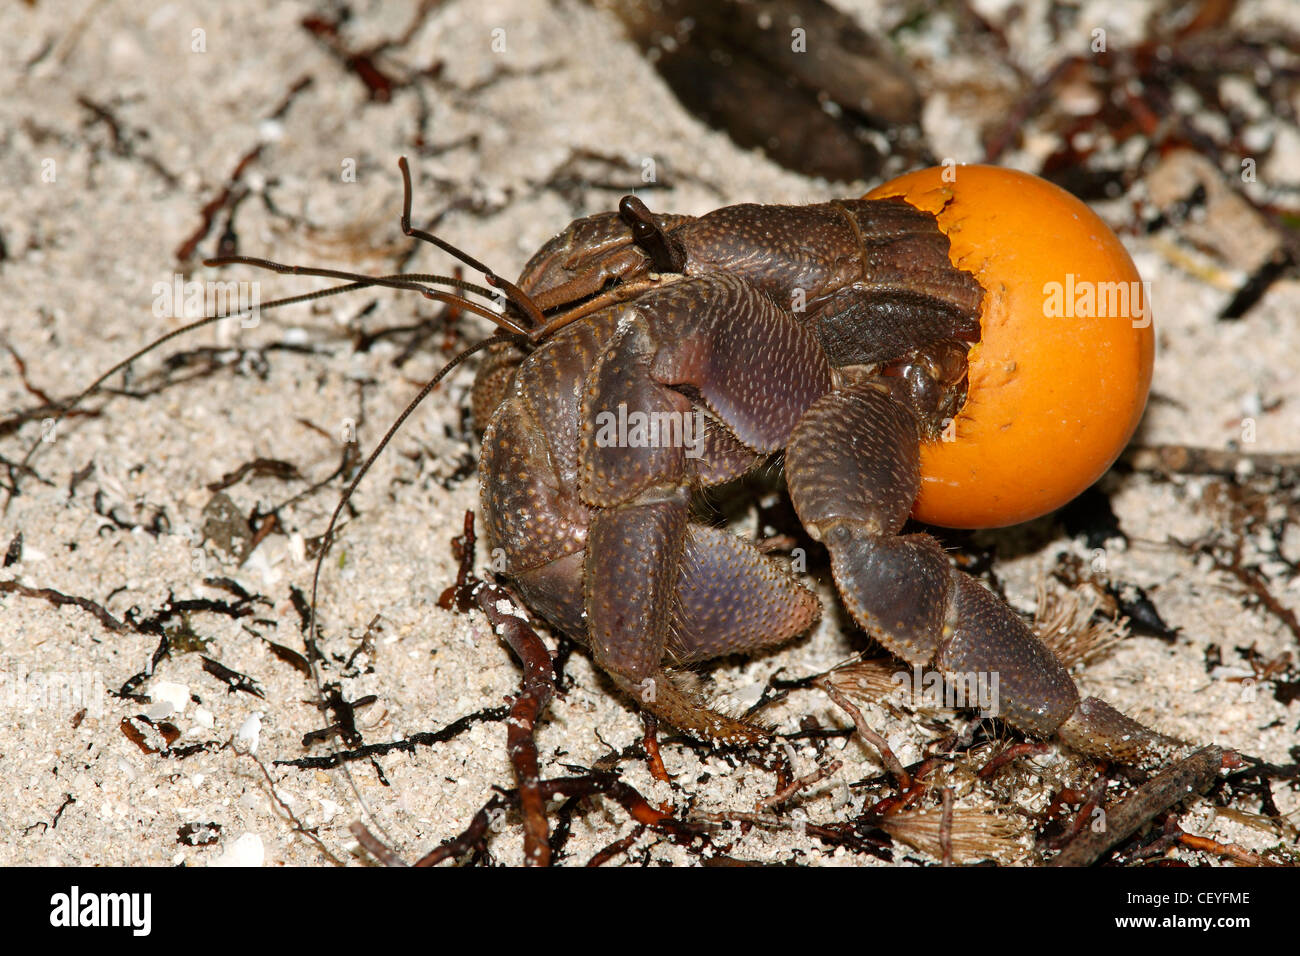 Cet ermite, Coenobita, est à l'aide d'une balle de tennis de table orange comme une coquille de protection au lieu de l'habituelle mollusk shell Banque D'Images